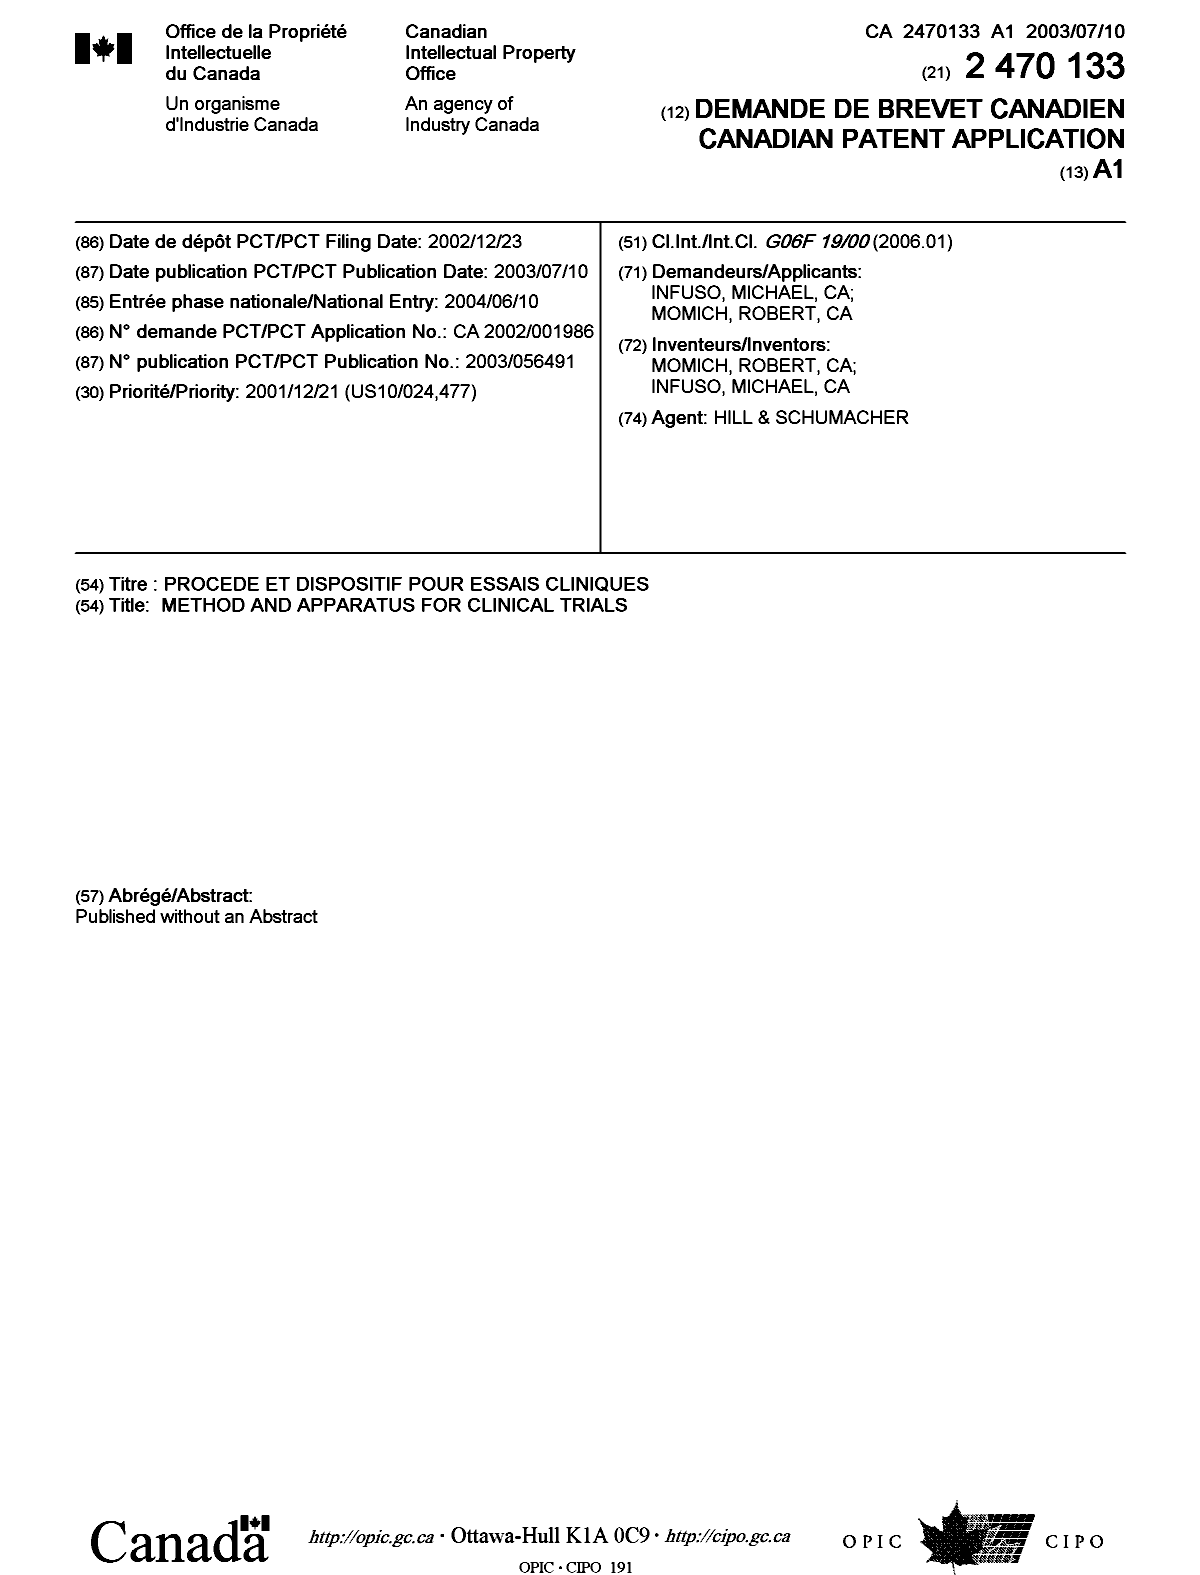 Document de brevet canadien 2470133. Page couverture 20100827. Image 1 de 1